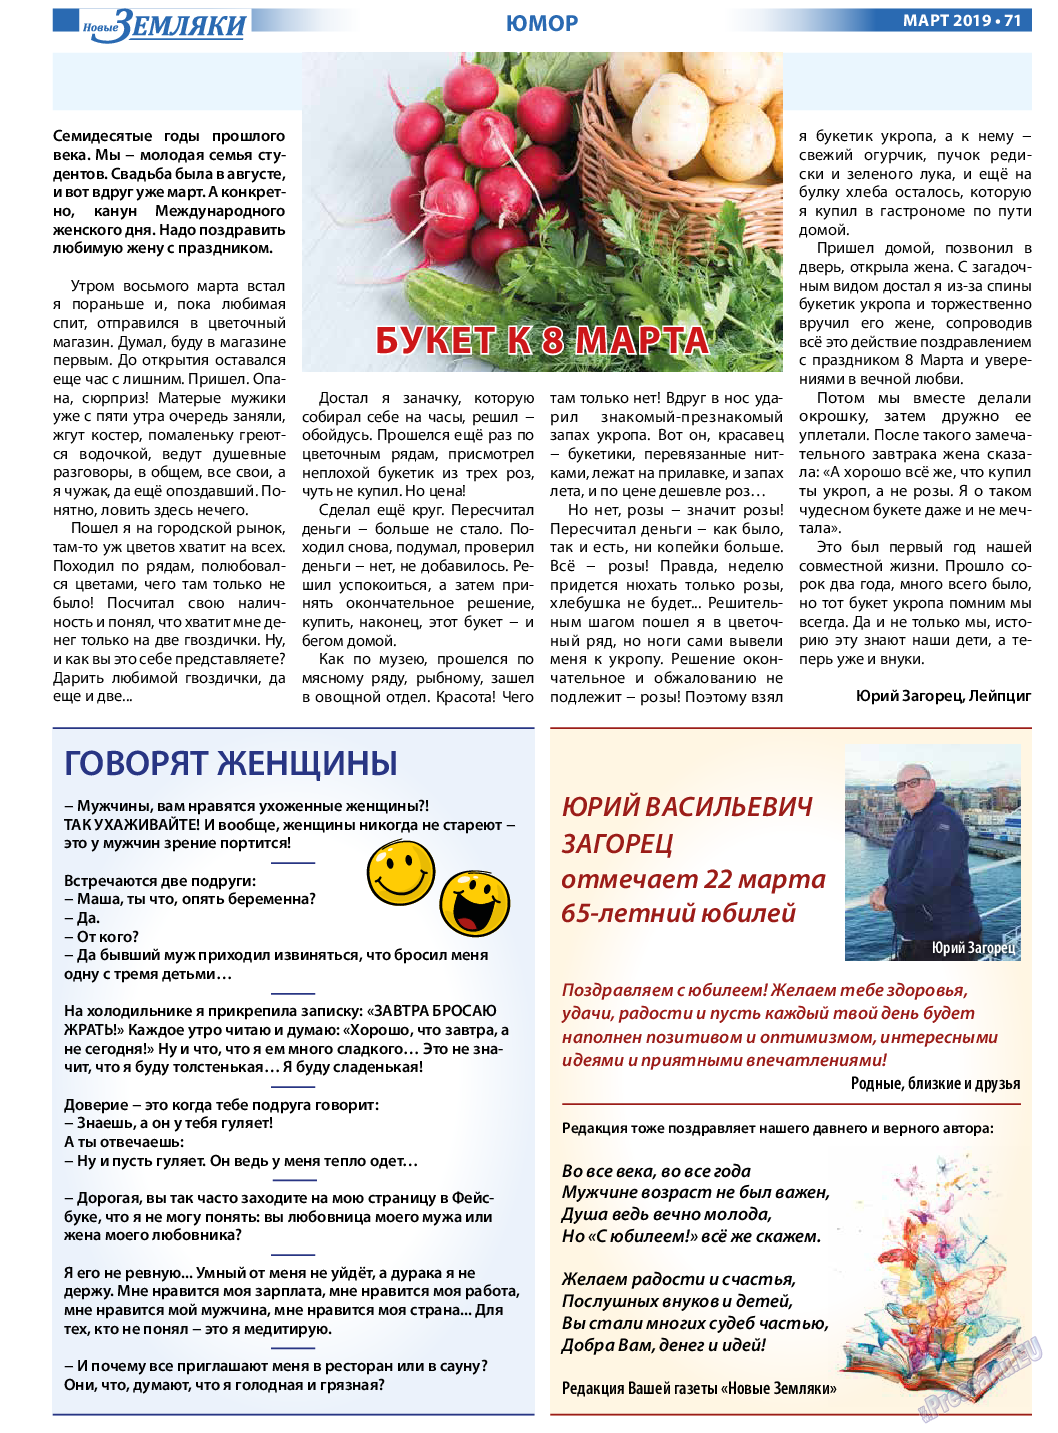 Новые Земляки, газета. 2019 №3 стр.71